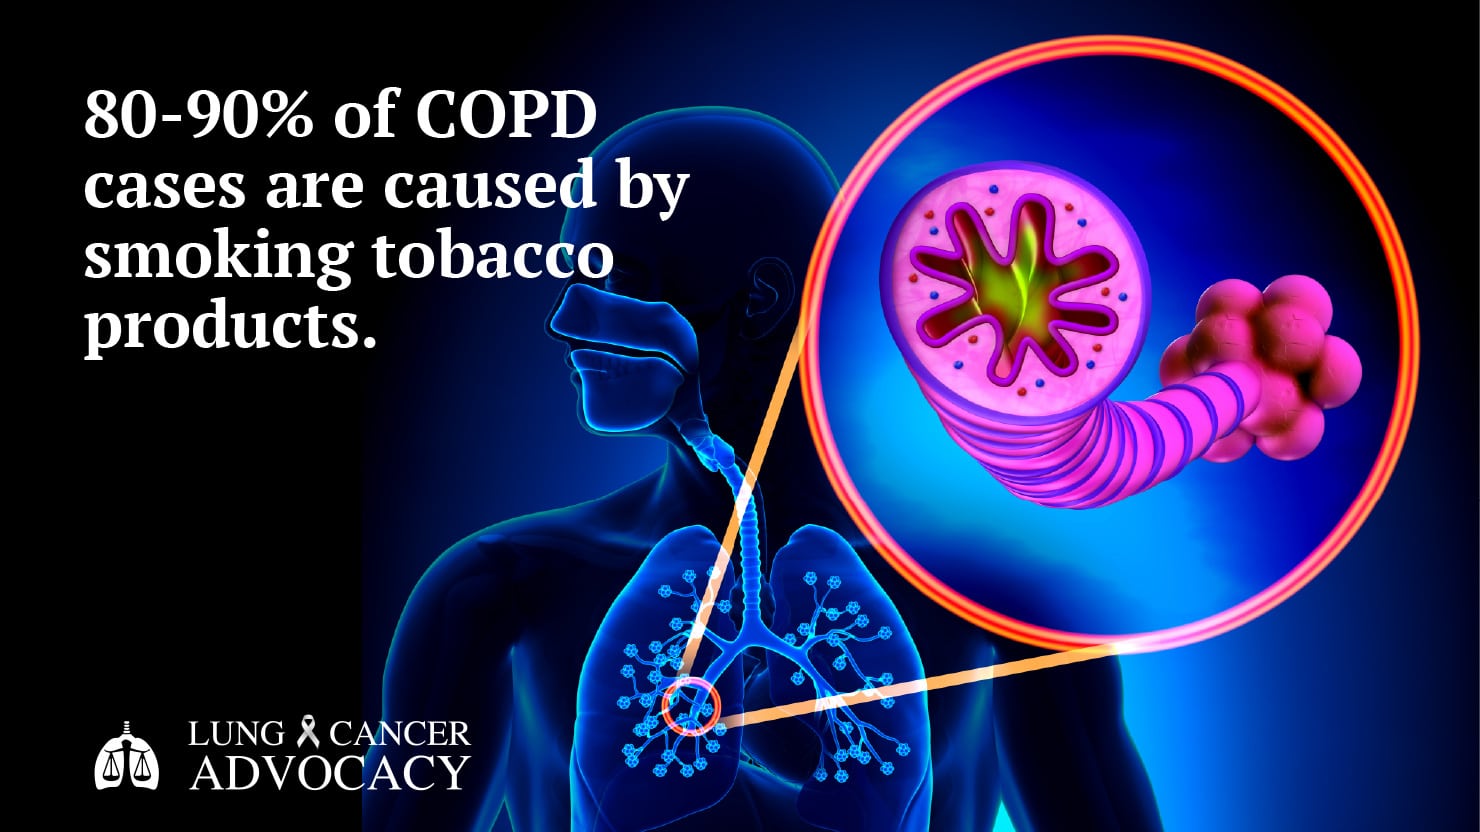 COPD causes, smoking